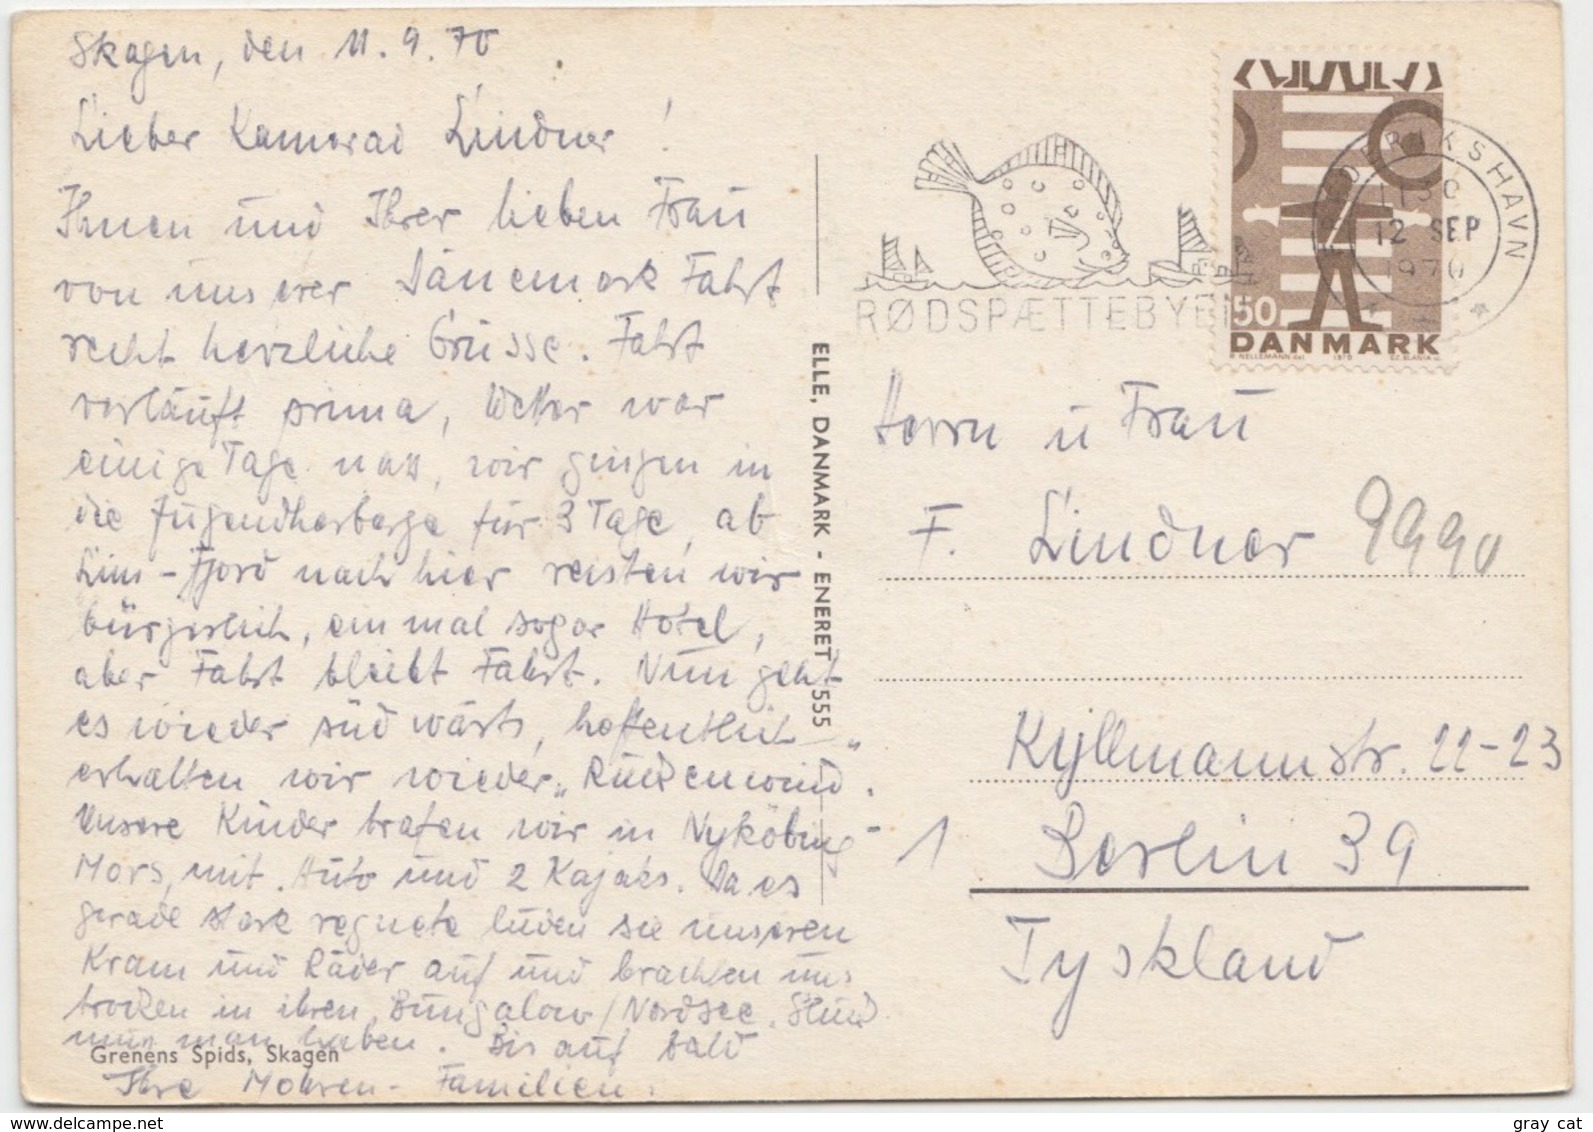 Grenens Spids, Skagen, Denmark, 1970 Used Postcard [22152] - Denmark